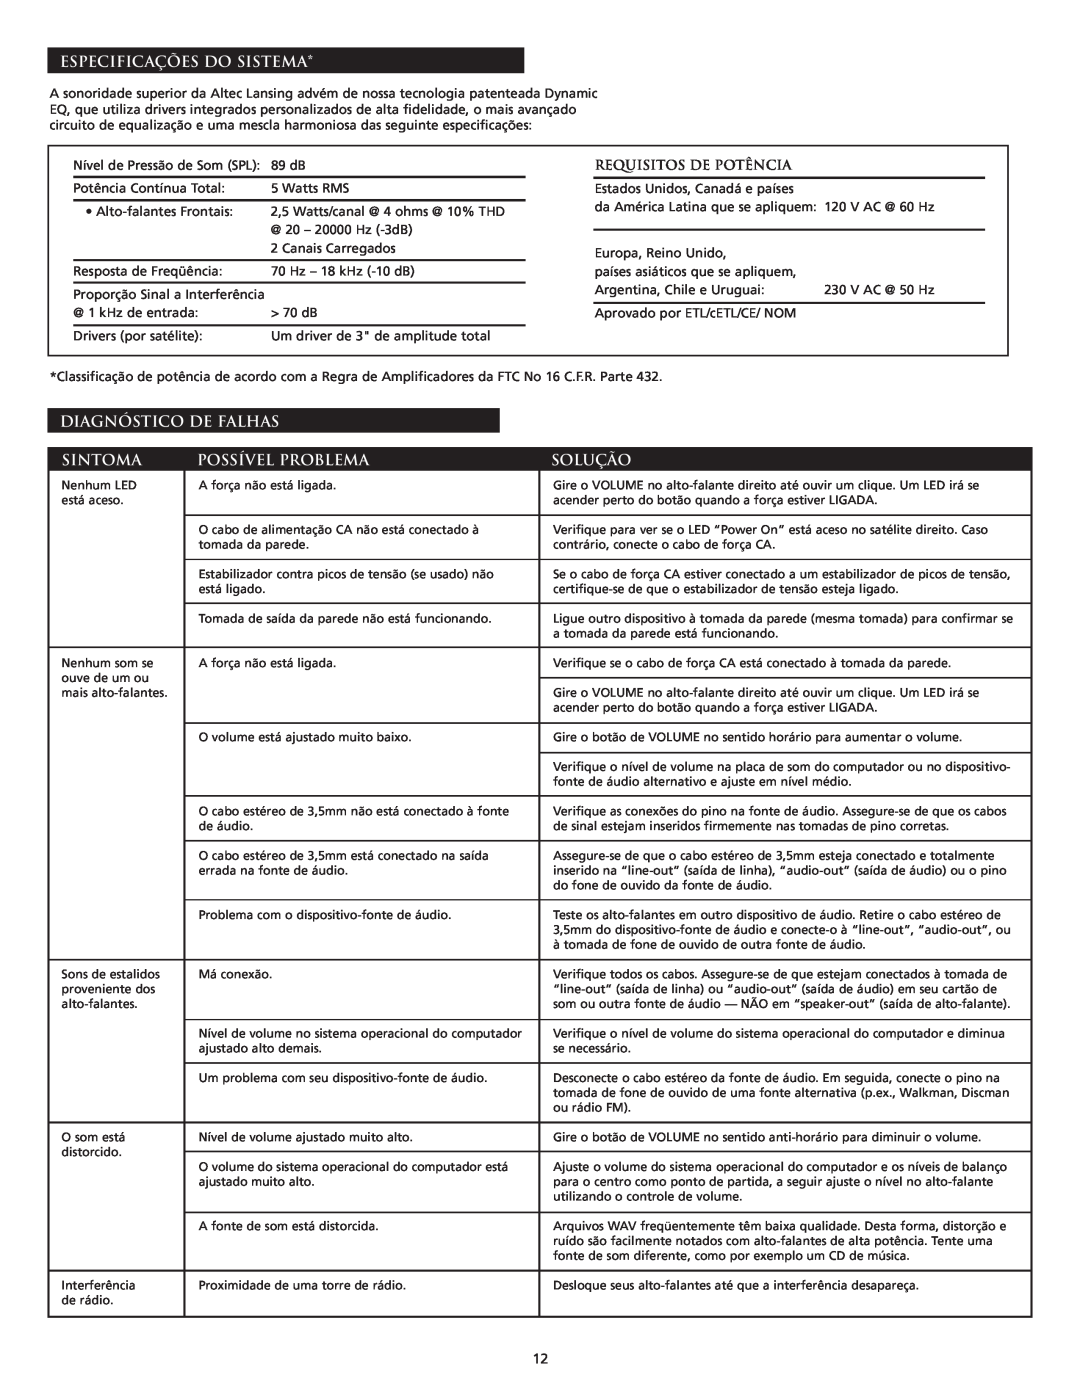 Altec Lansing VS2120 manual Especificações Do Sistema, Diagnóstico De Falhas, Sintoma, Possível Problema, Solução 